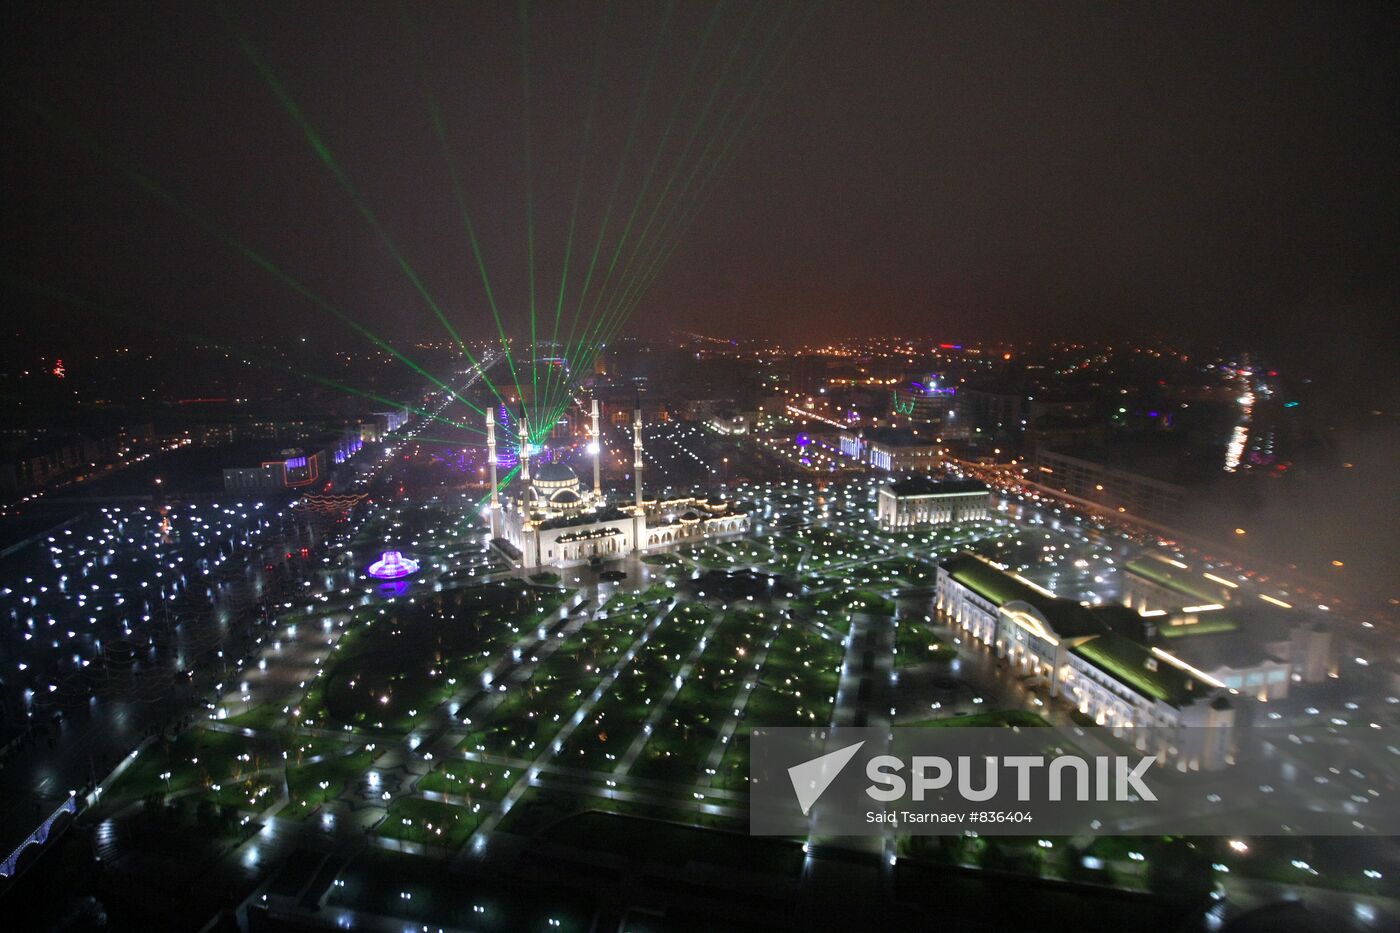 New Year celebration in Grozny